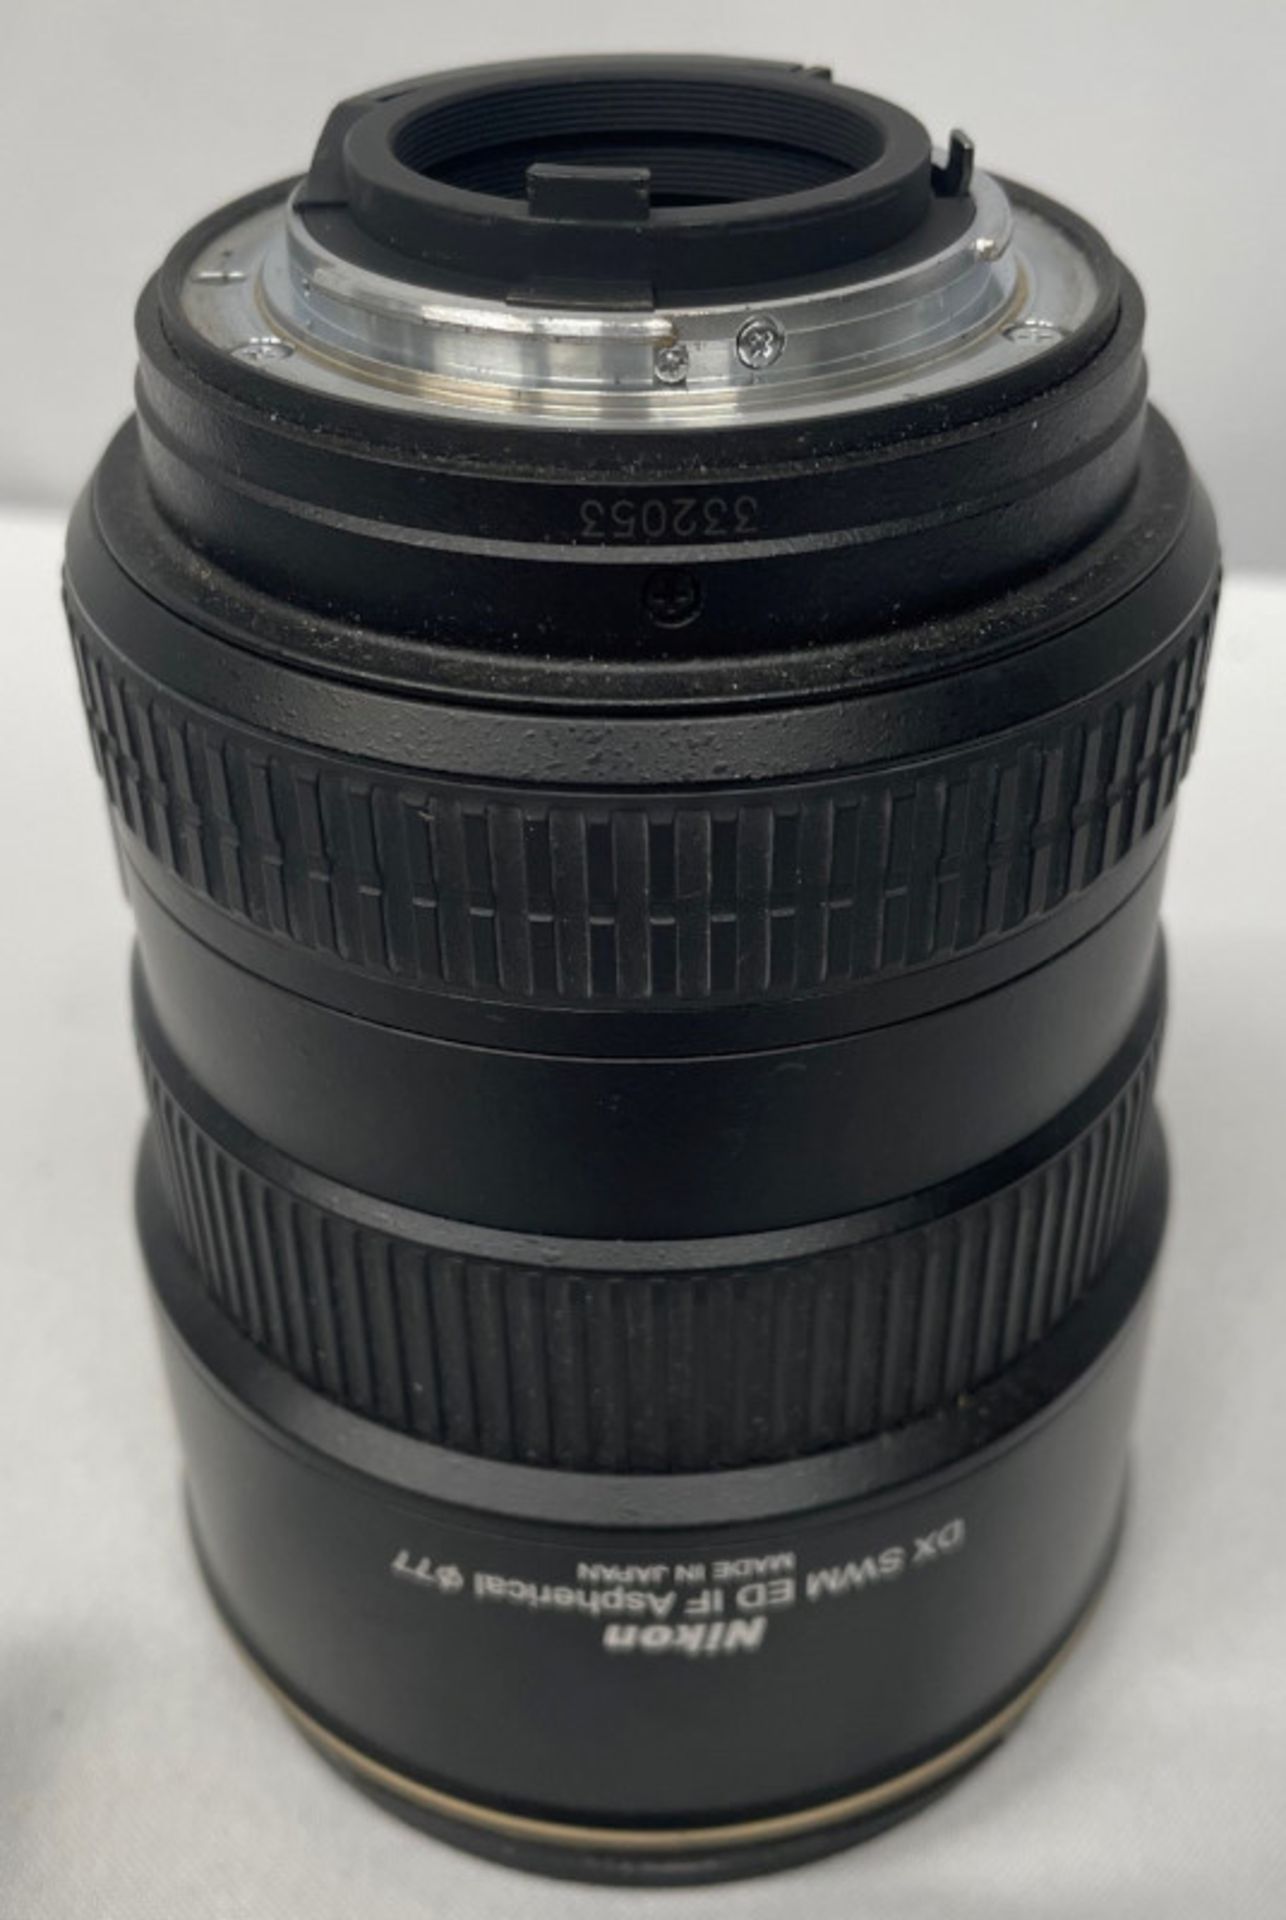 Nikon DX AF-S Nikkor 17-55mm - 1:2.8G ED Lens - Serial No. 332053 with HOYA 77mm UV(O) Filter - Image 3 of 8